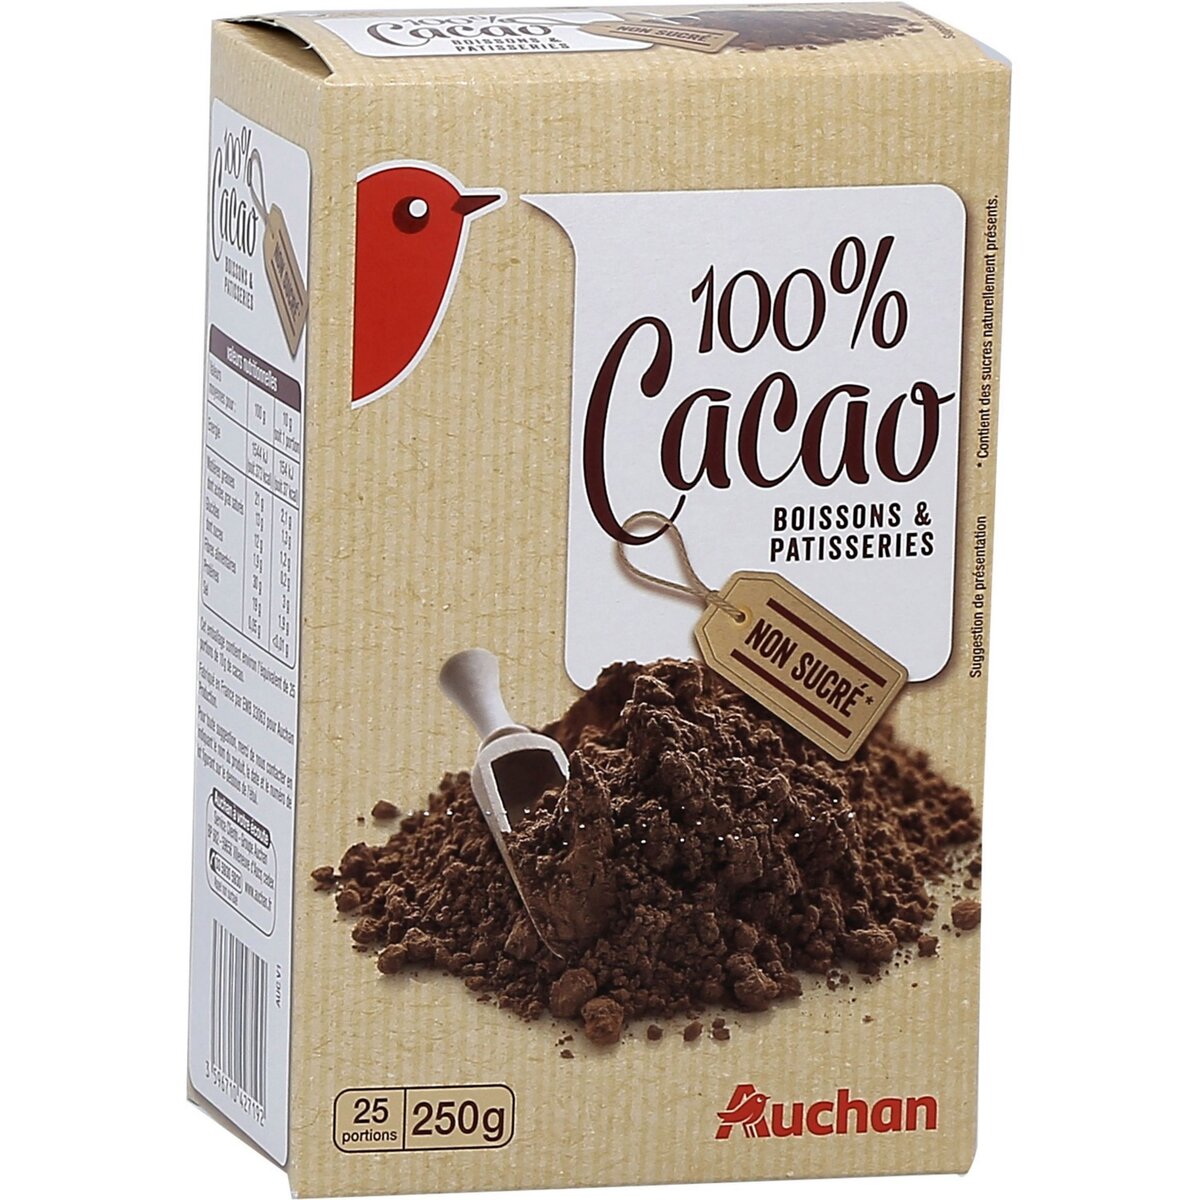 Livraison à domicile Cora Cacao en poudre non sucre, 250g